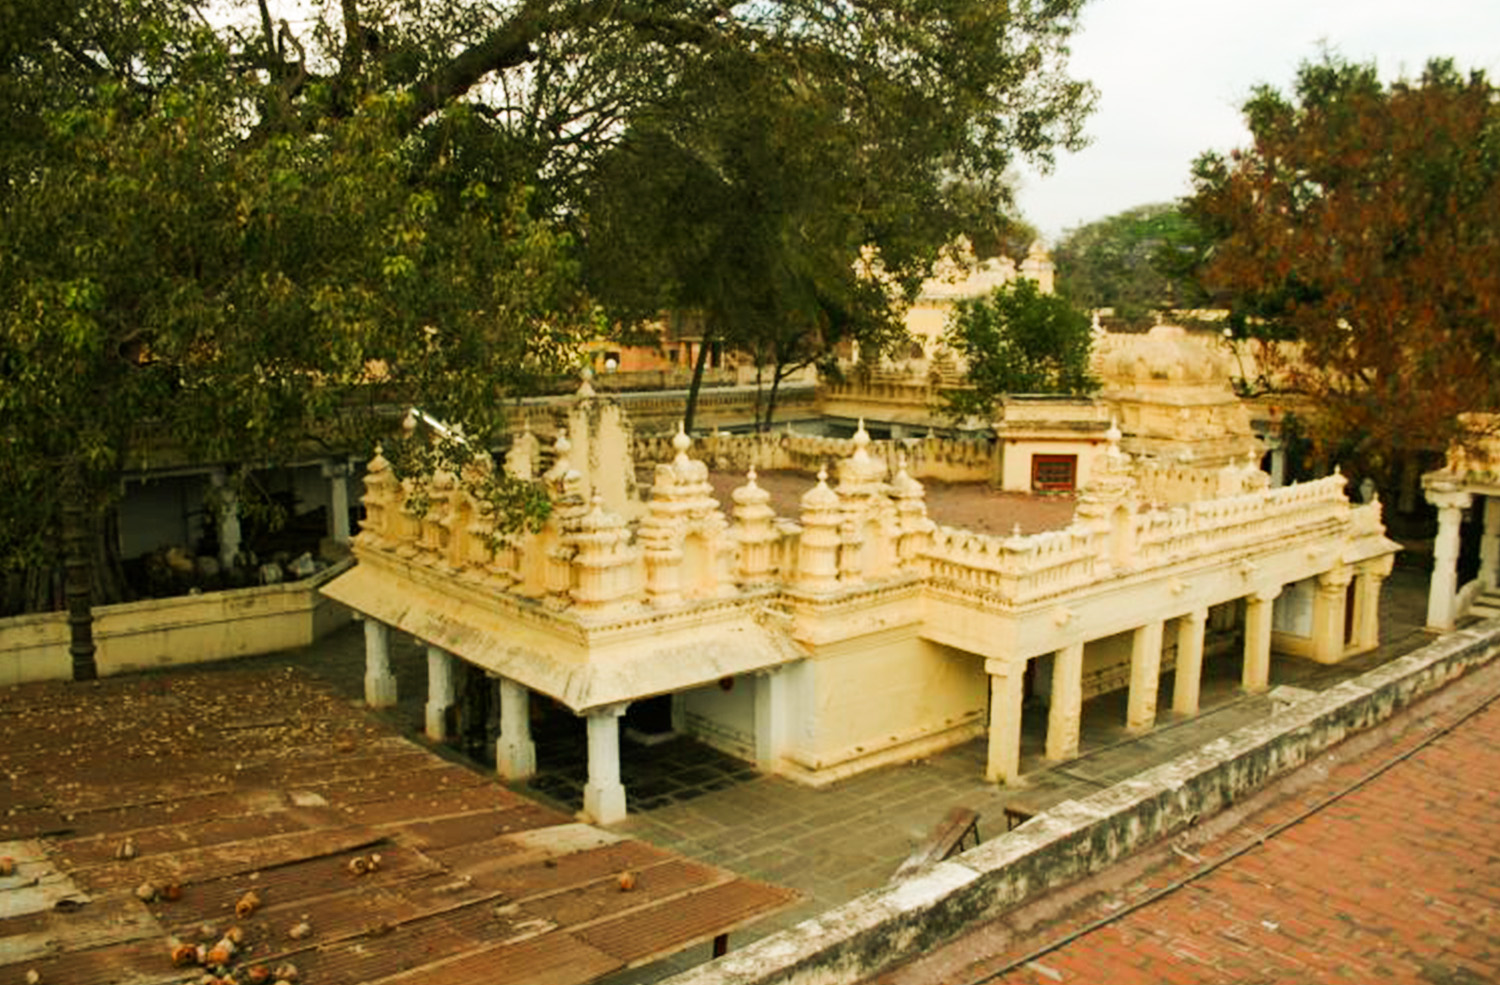 Sri Chamundeshwari Temple